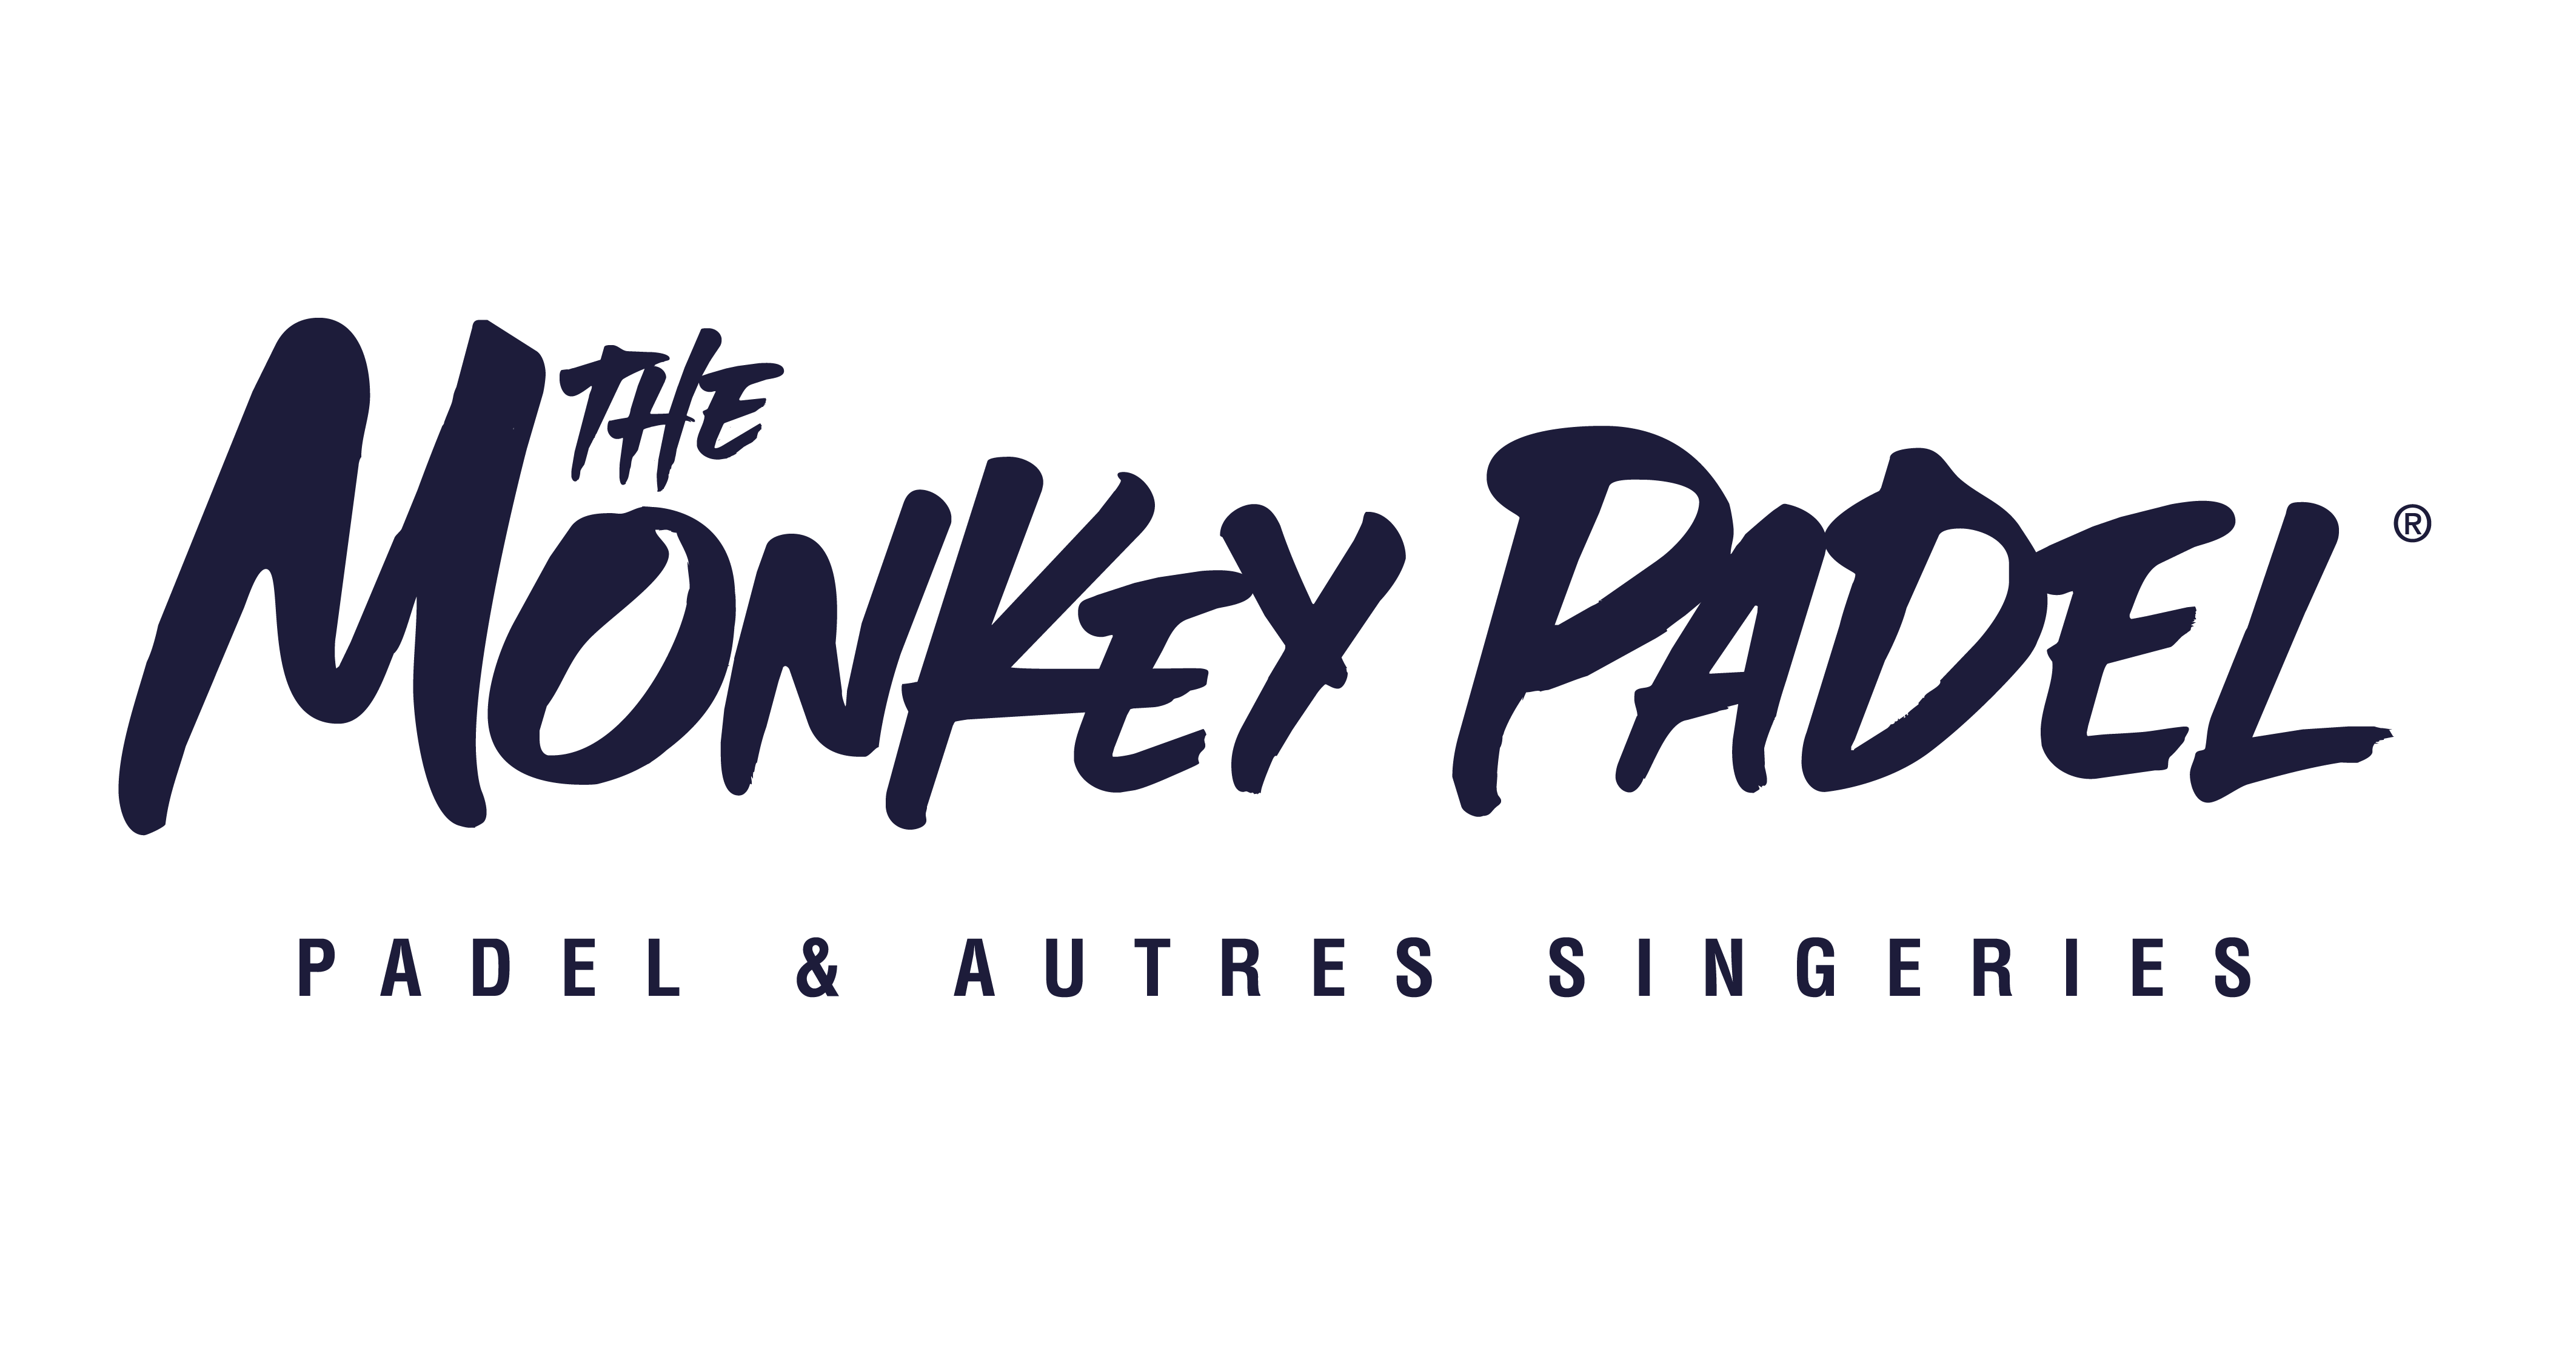 De aap Padel